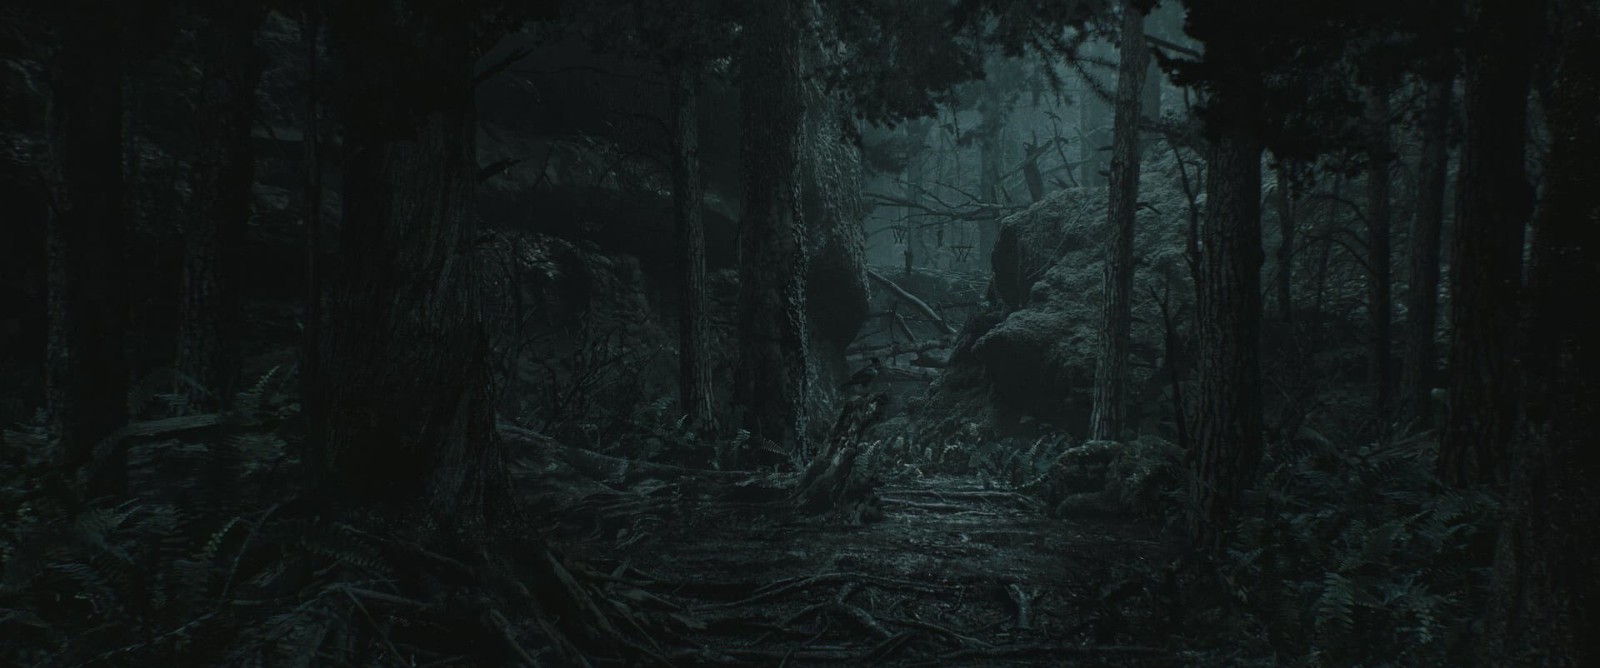 《心灵杀手2》全新概念艺术图 黑夜森林阴森恐怖 二次世界 第2张